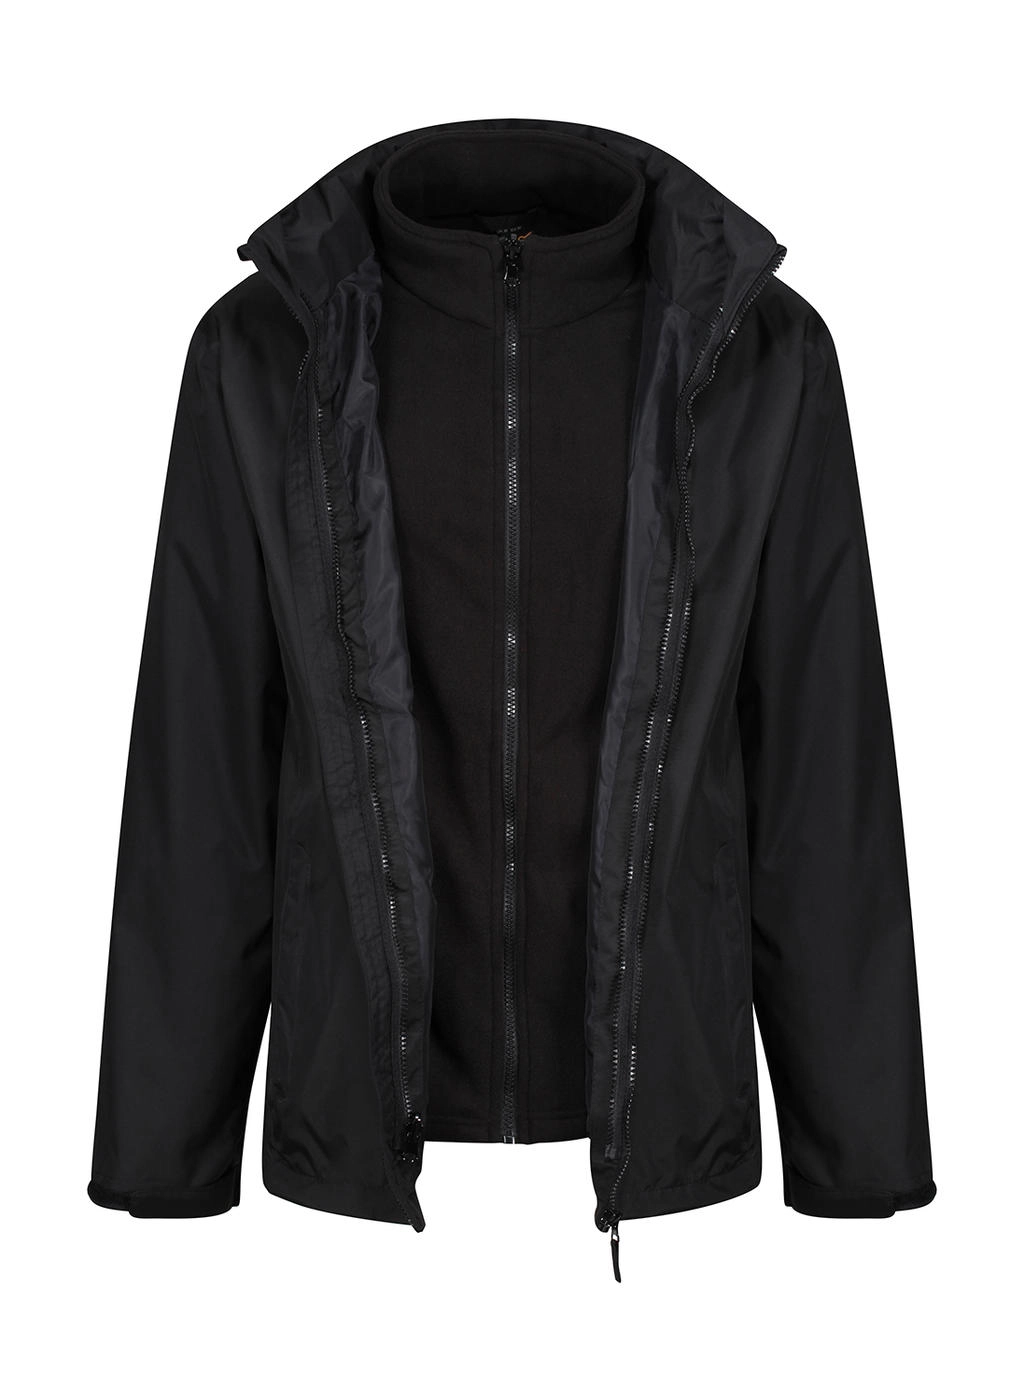 Classic 3-in-1 Jacket zum Besticken und Bedrucken in der Farbe Black mit Ihren Logo, Schriftzug oder Motiv.